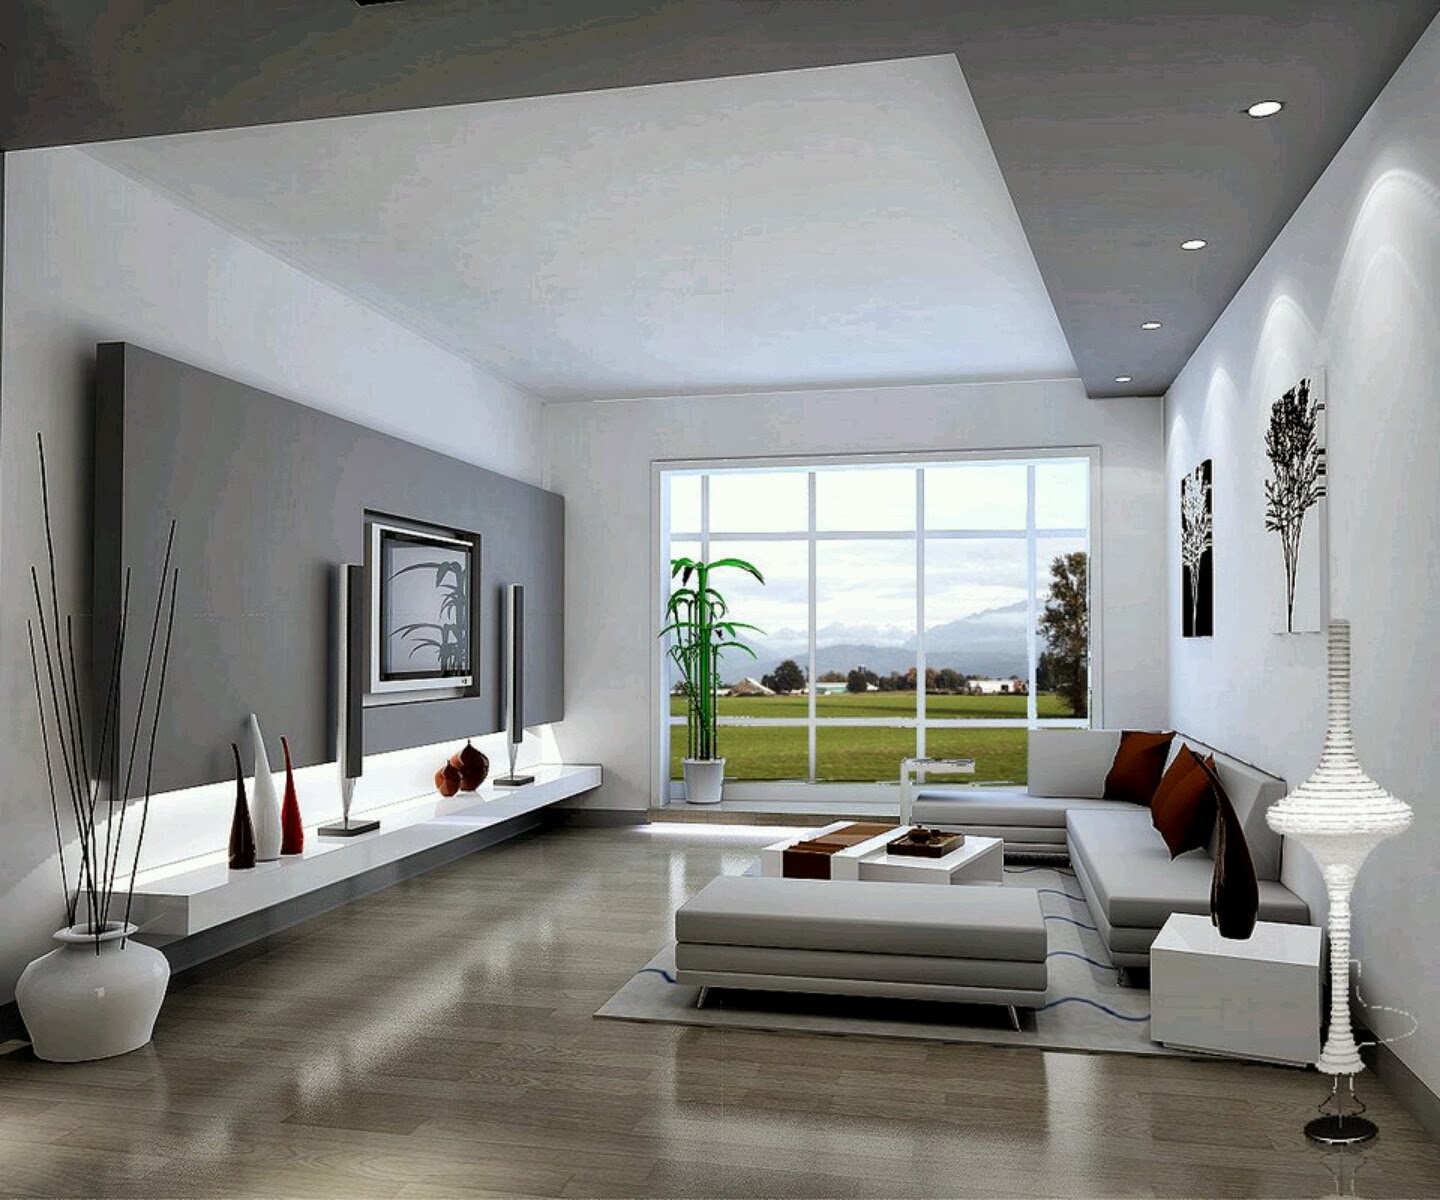 interior rumah minimalis desain klasik rumah desain rumah interior ...